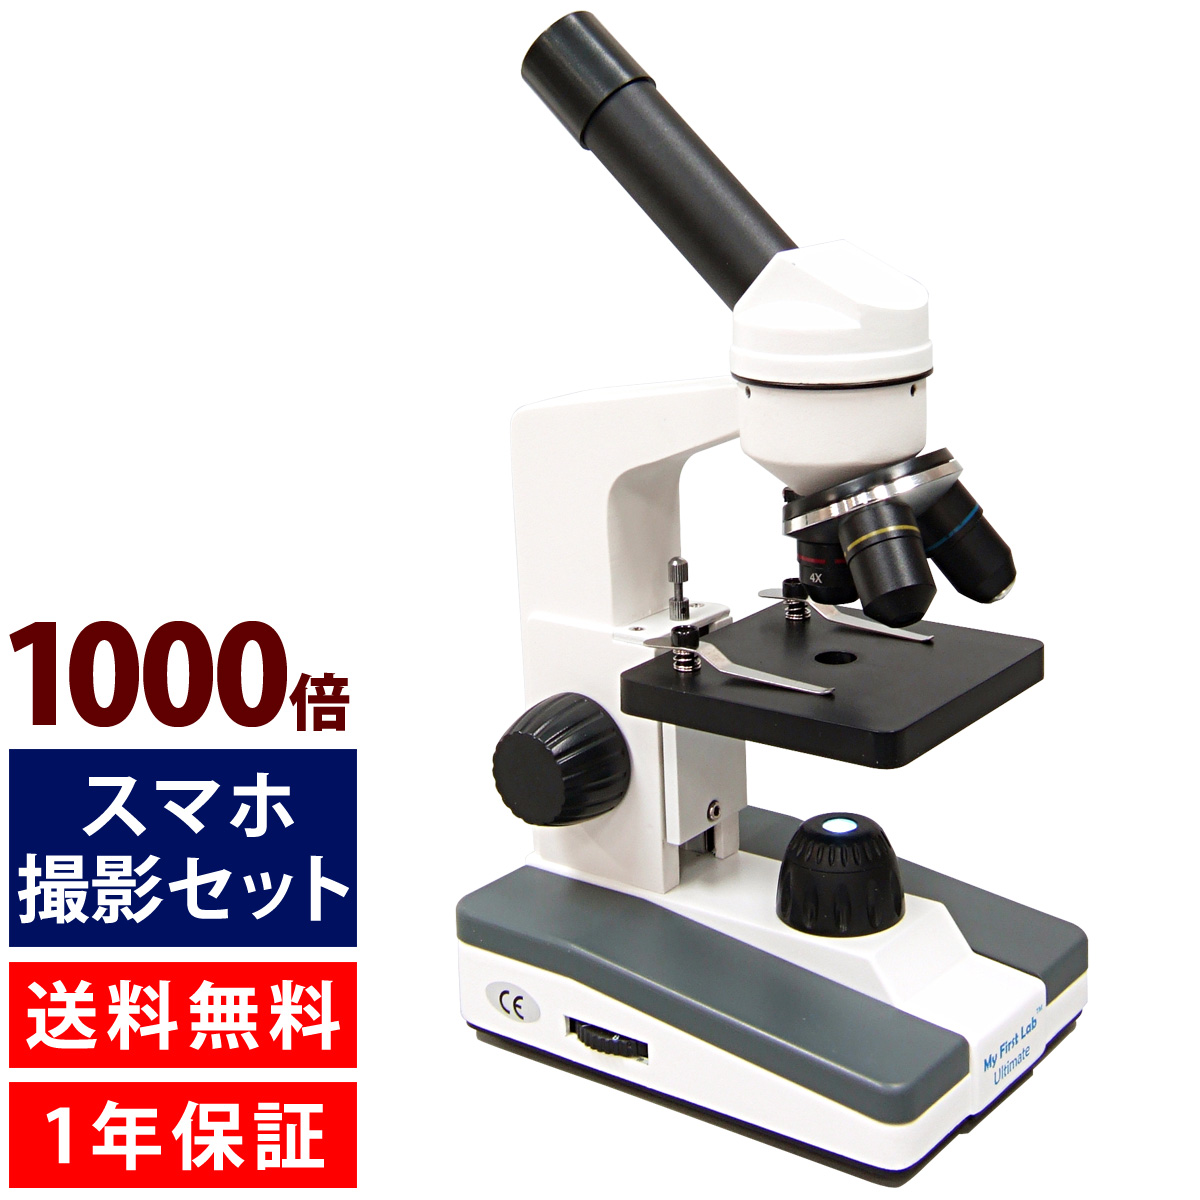 顕微鏡 小学生 スマホ撮影セット 40倍-1000倍 生物顕微鏡 顕微鏡セット